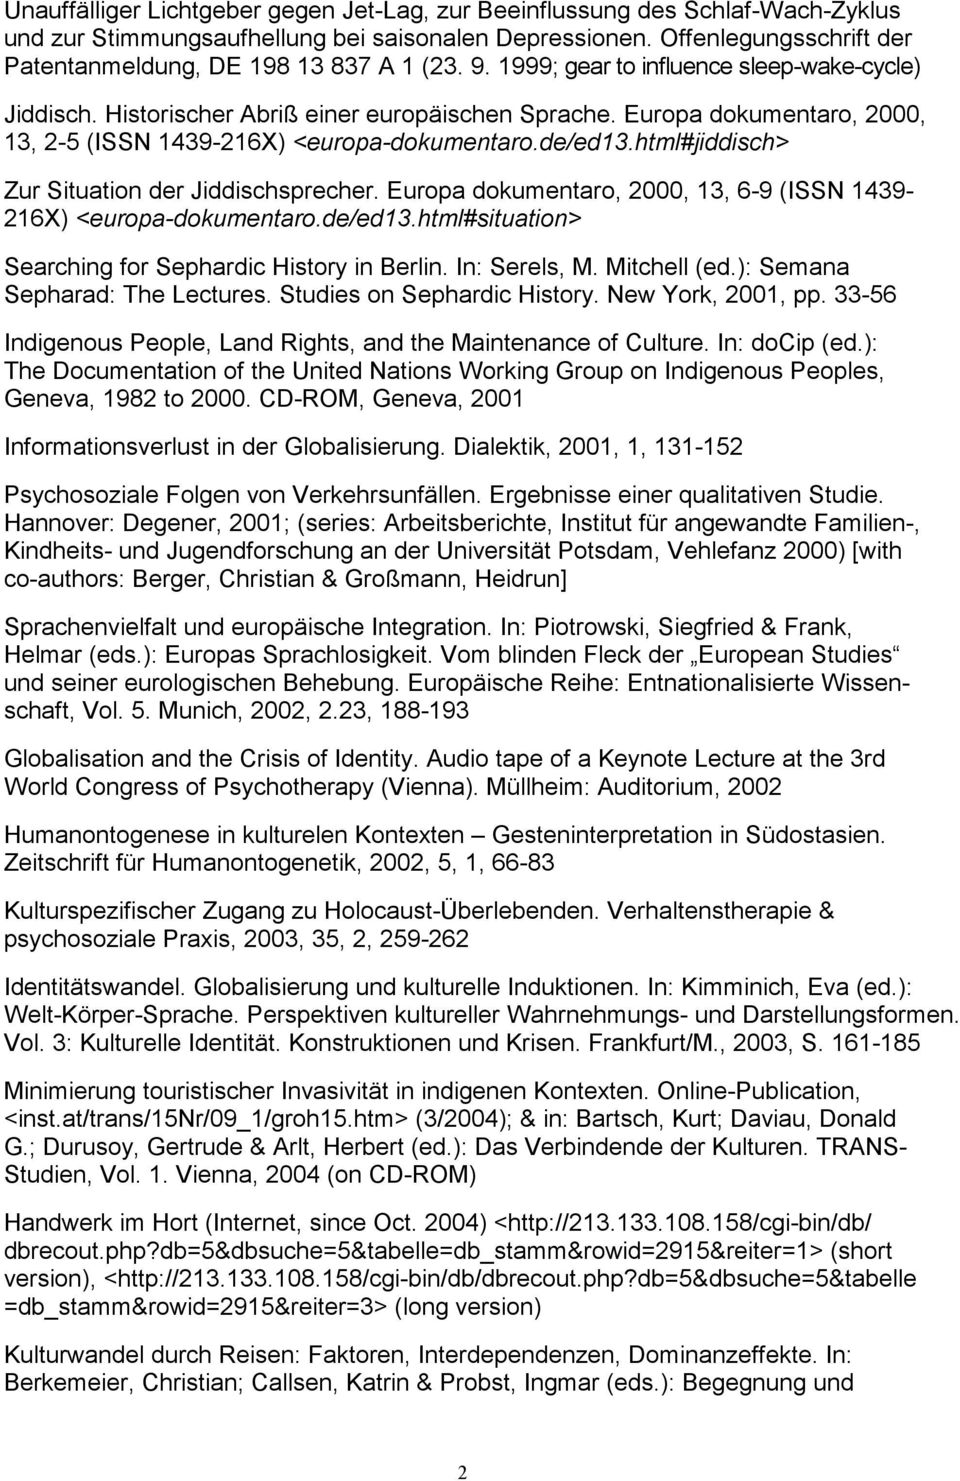 Europa dokumentaro, 2000, 13, 2-5 (ISSN 1439-216X) <europa-dokumentaro.de/ed13.html#jiddisch> Zur Situation der Jiddischsprecher.